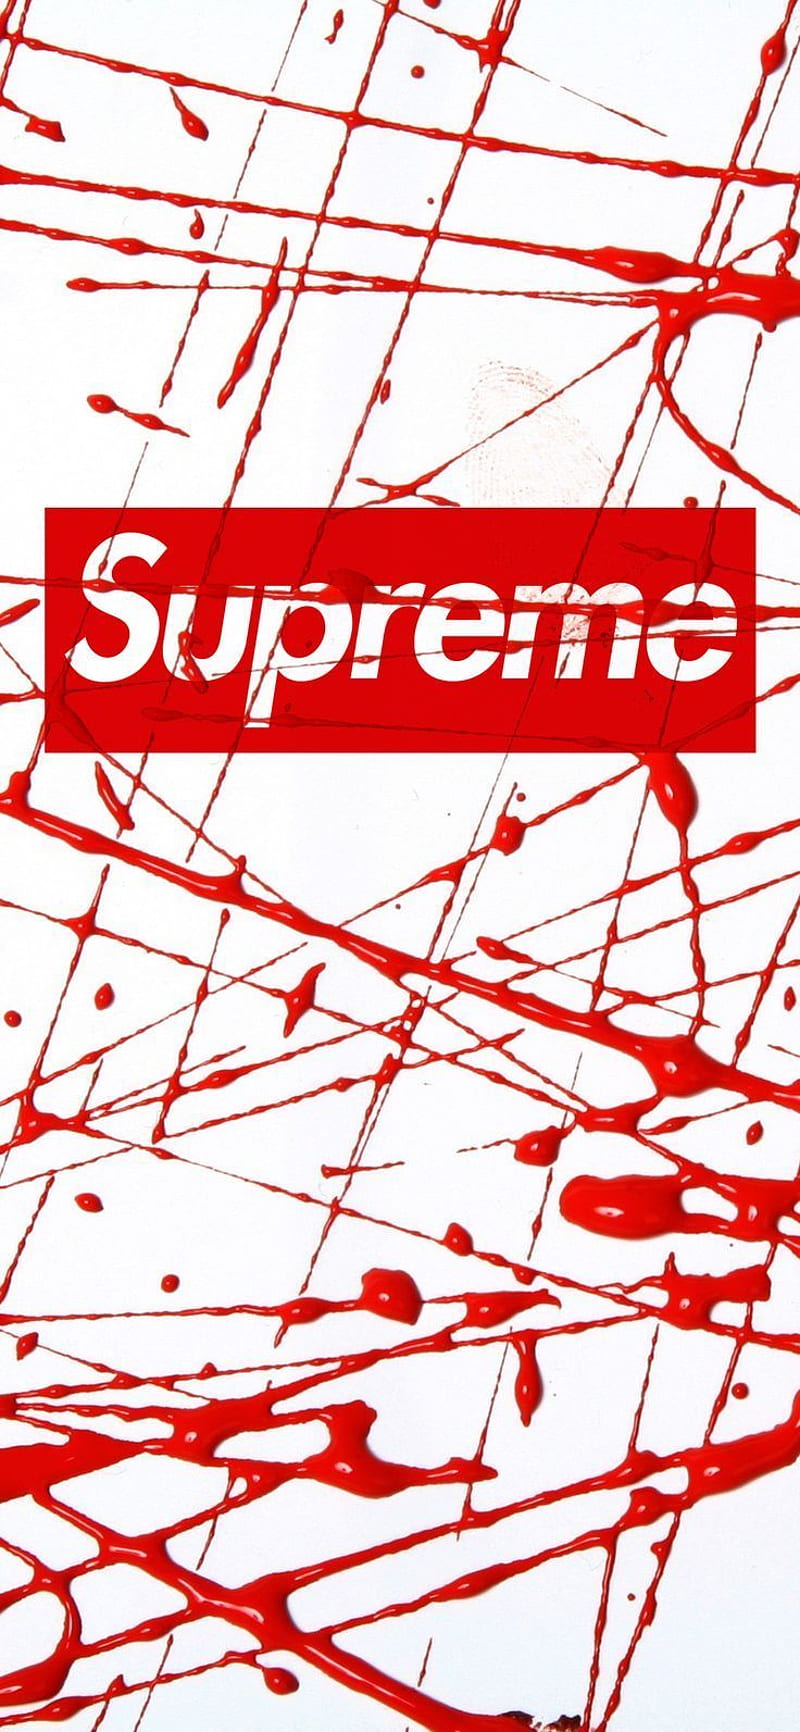 LV supreme Supreme  Supreme iphone  Bape Red Gucci HD phone wallpaper   Pxfuel